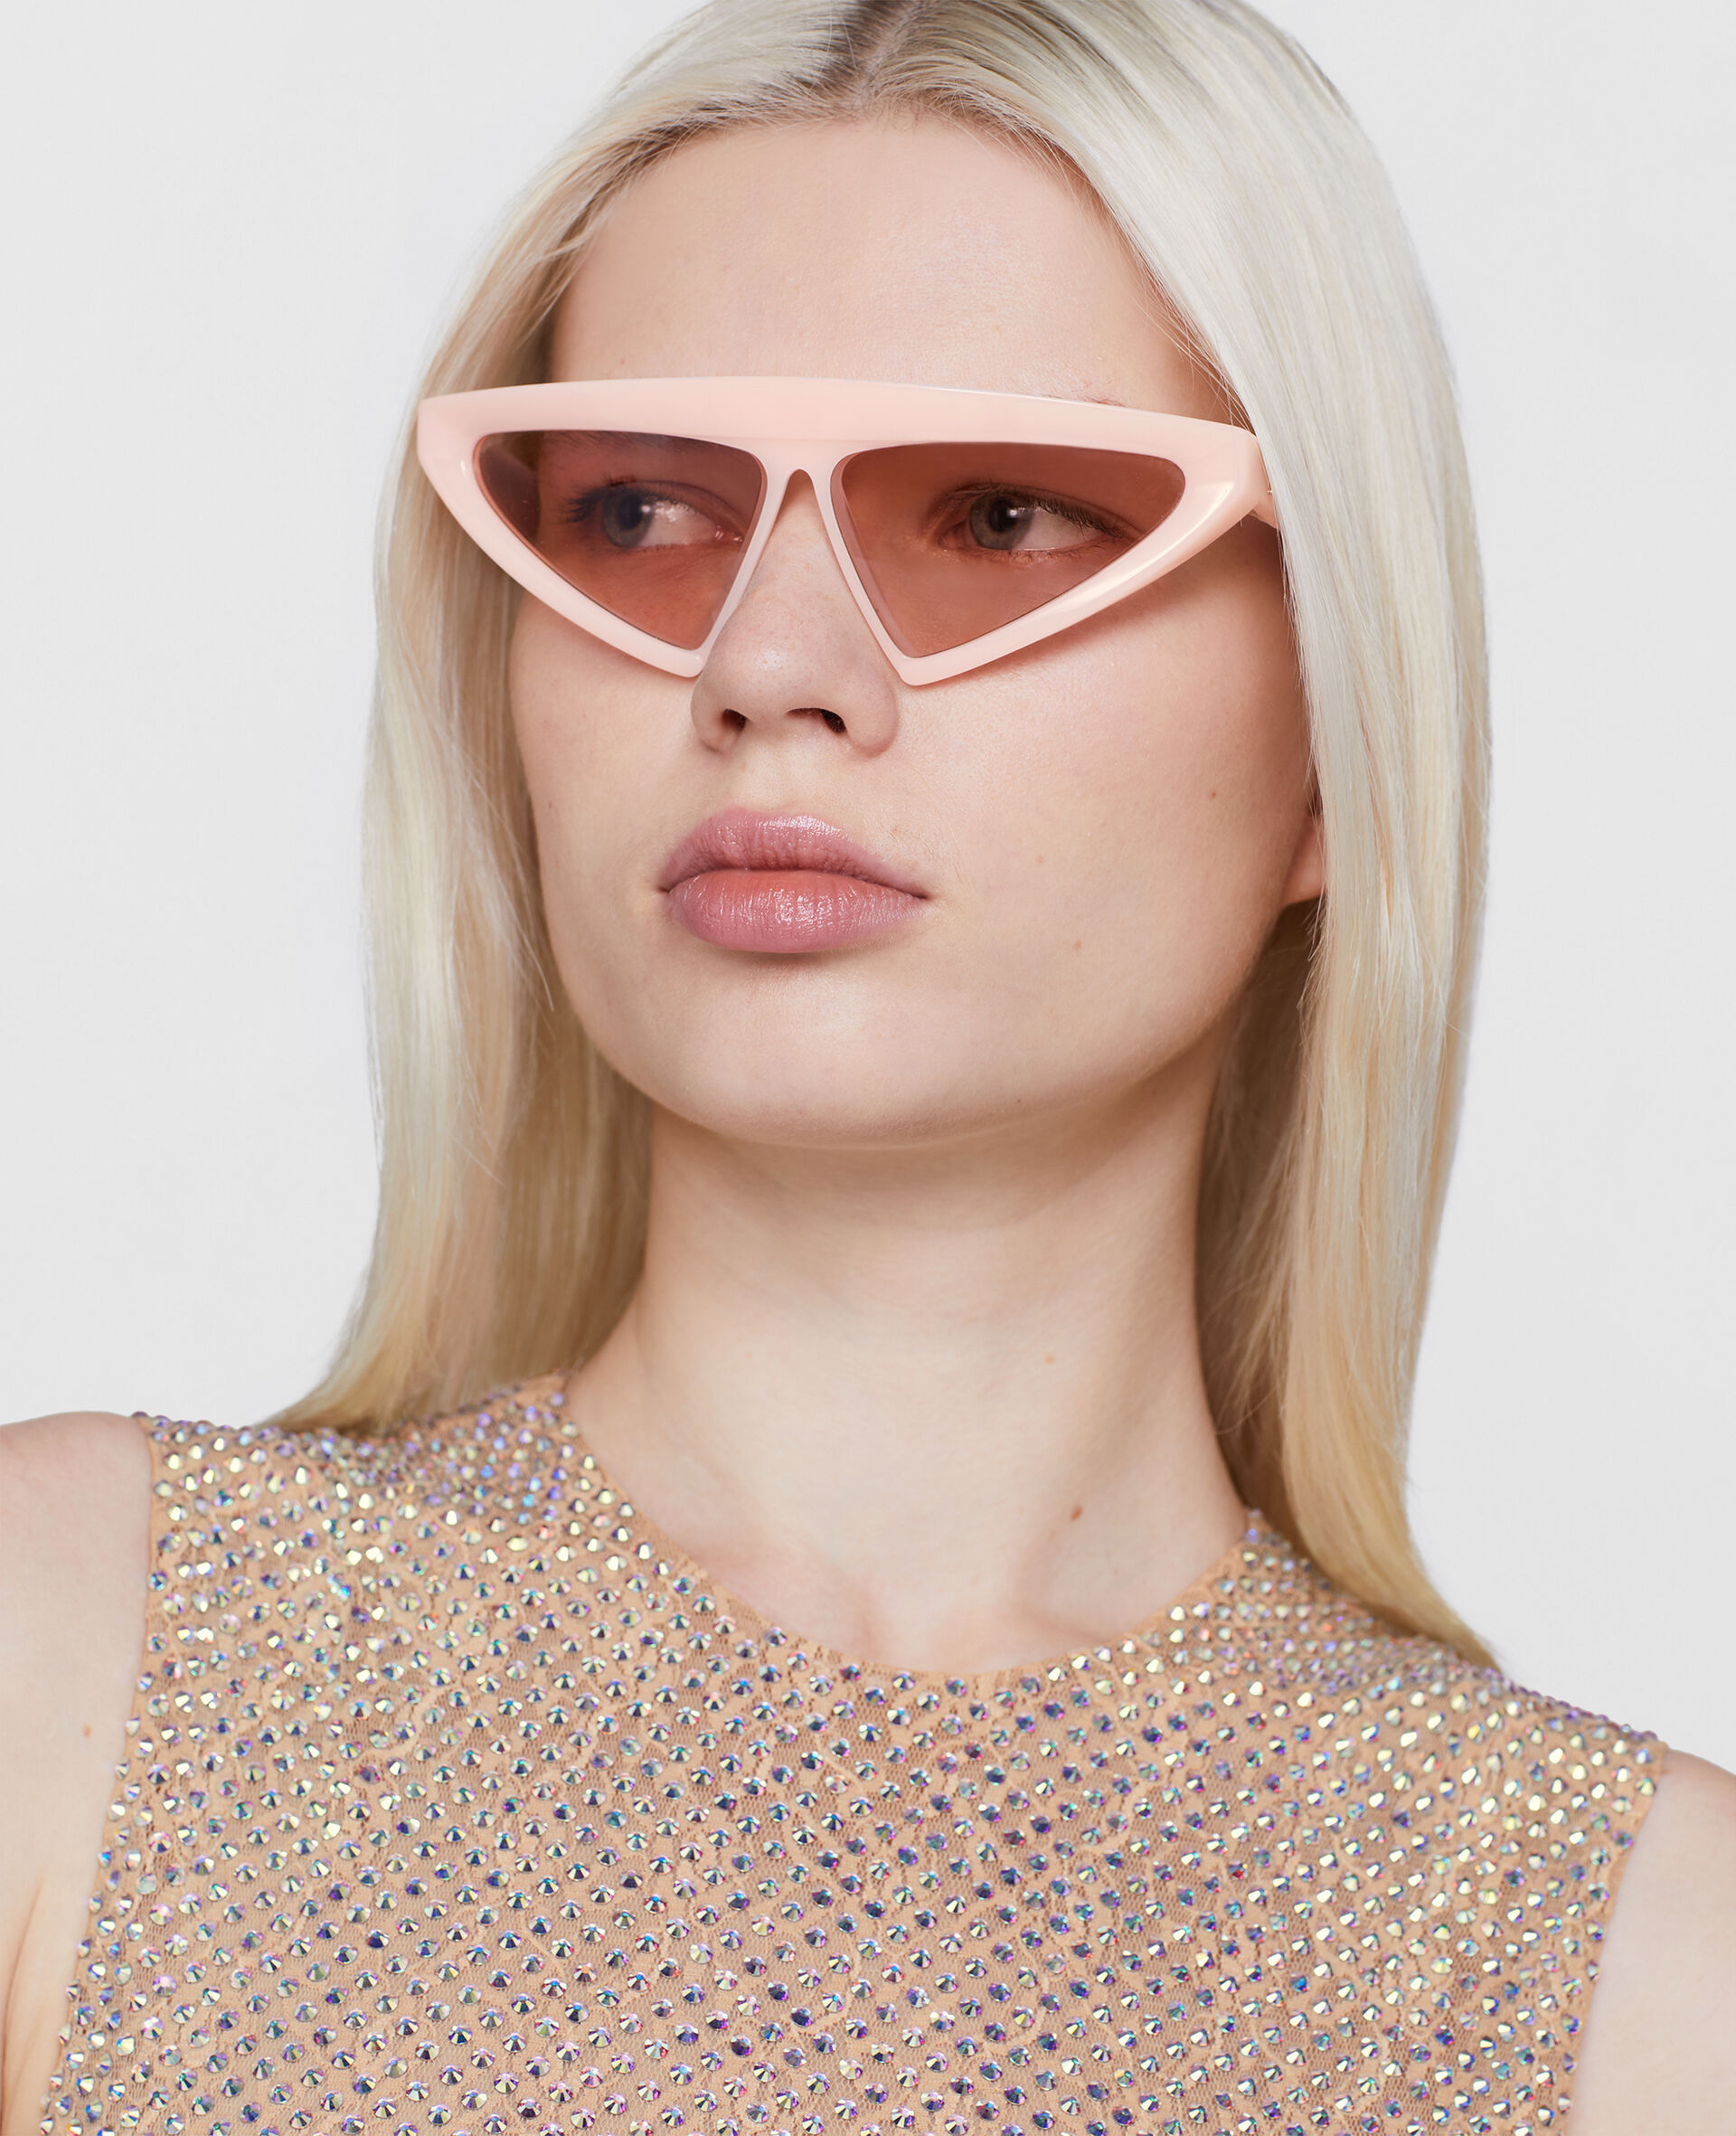 Cut-Eye Fashion Sunglasses-Black-large image number 1